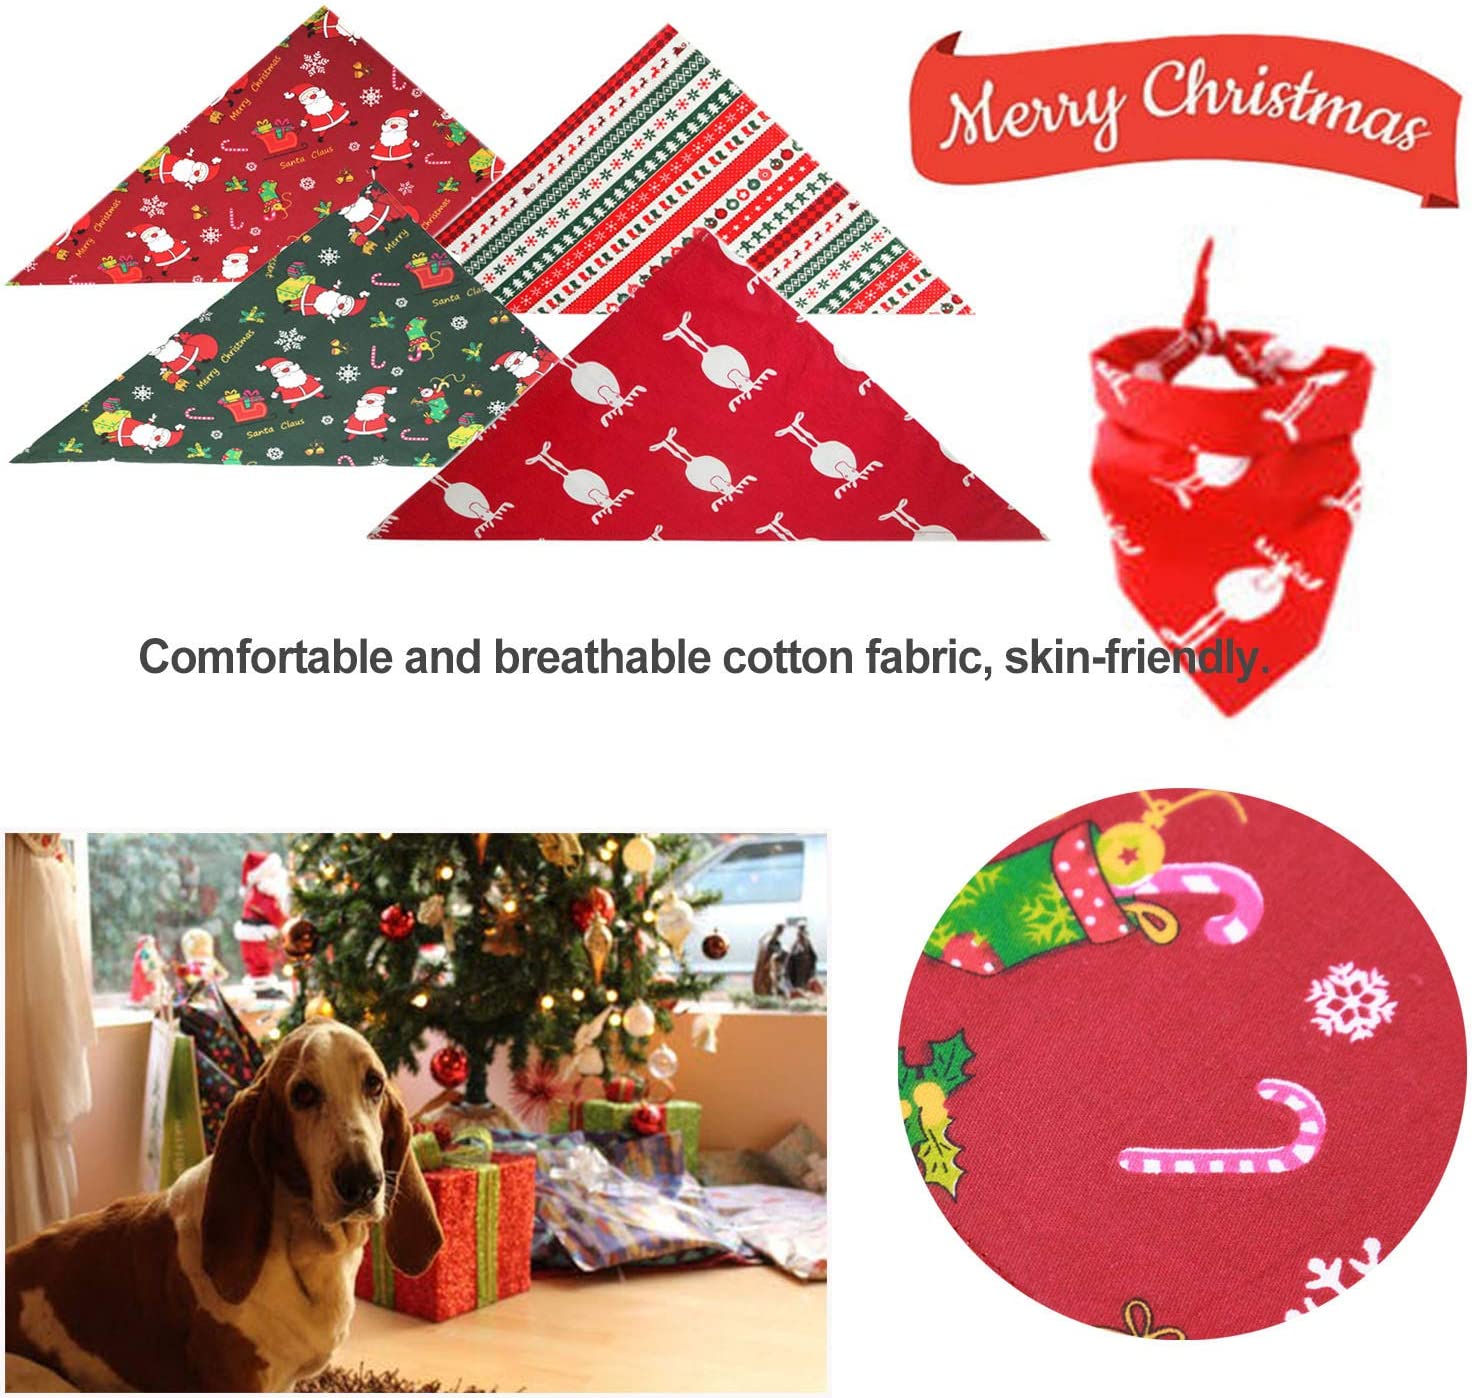  Nice Dream Bandanas para Perro, Paquete de 4 Baberos Navidad Triangulares Lavables Reversibles, Accesorios para Perros y Gatos pequeños, medianos y Grandes 